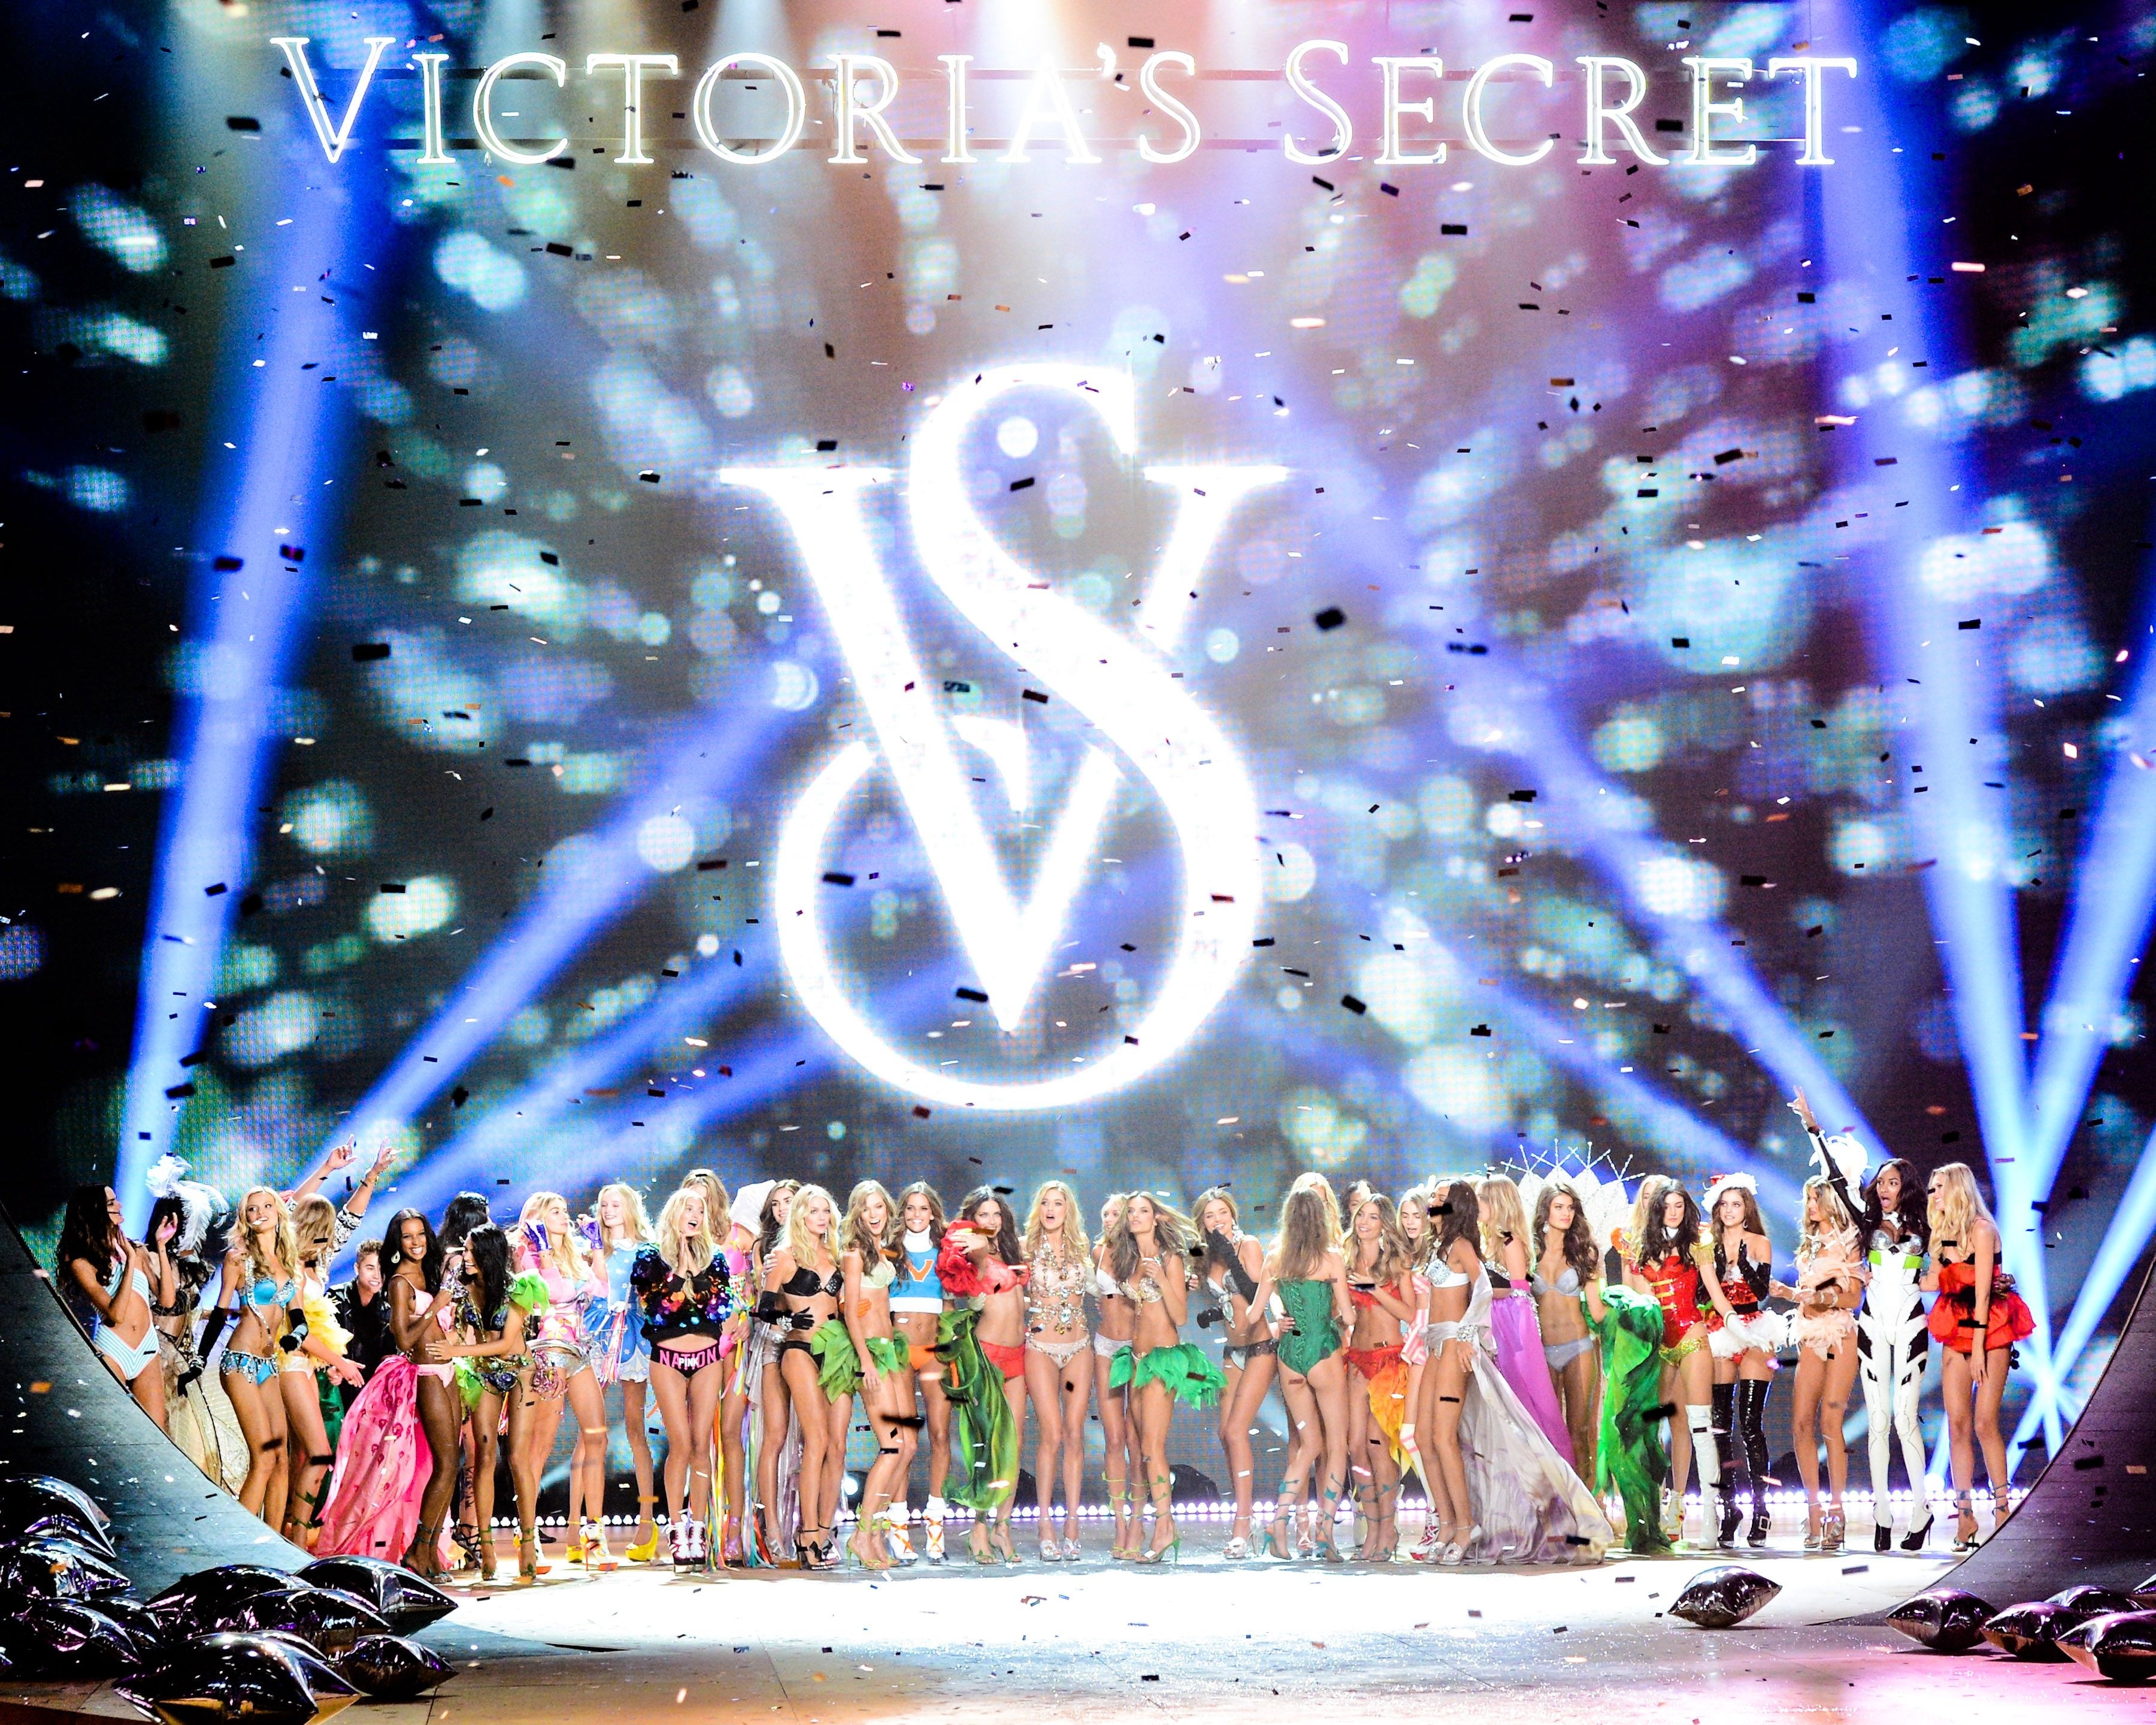 Victoria's Secret Fashion Show, Lexington Armory, New - Victoria's Secret Vision , HD Wallpaper & Backgrounds